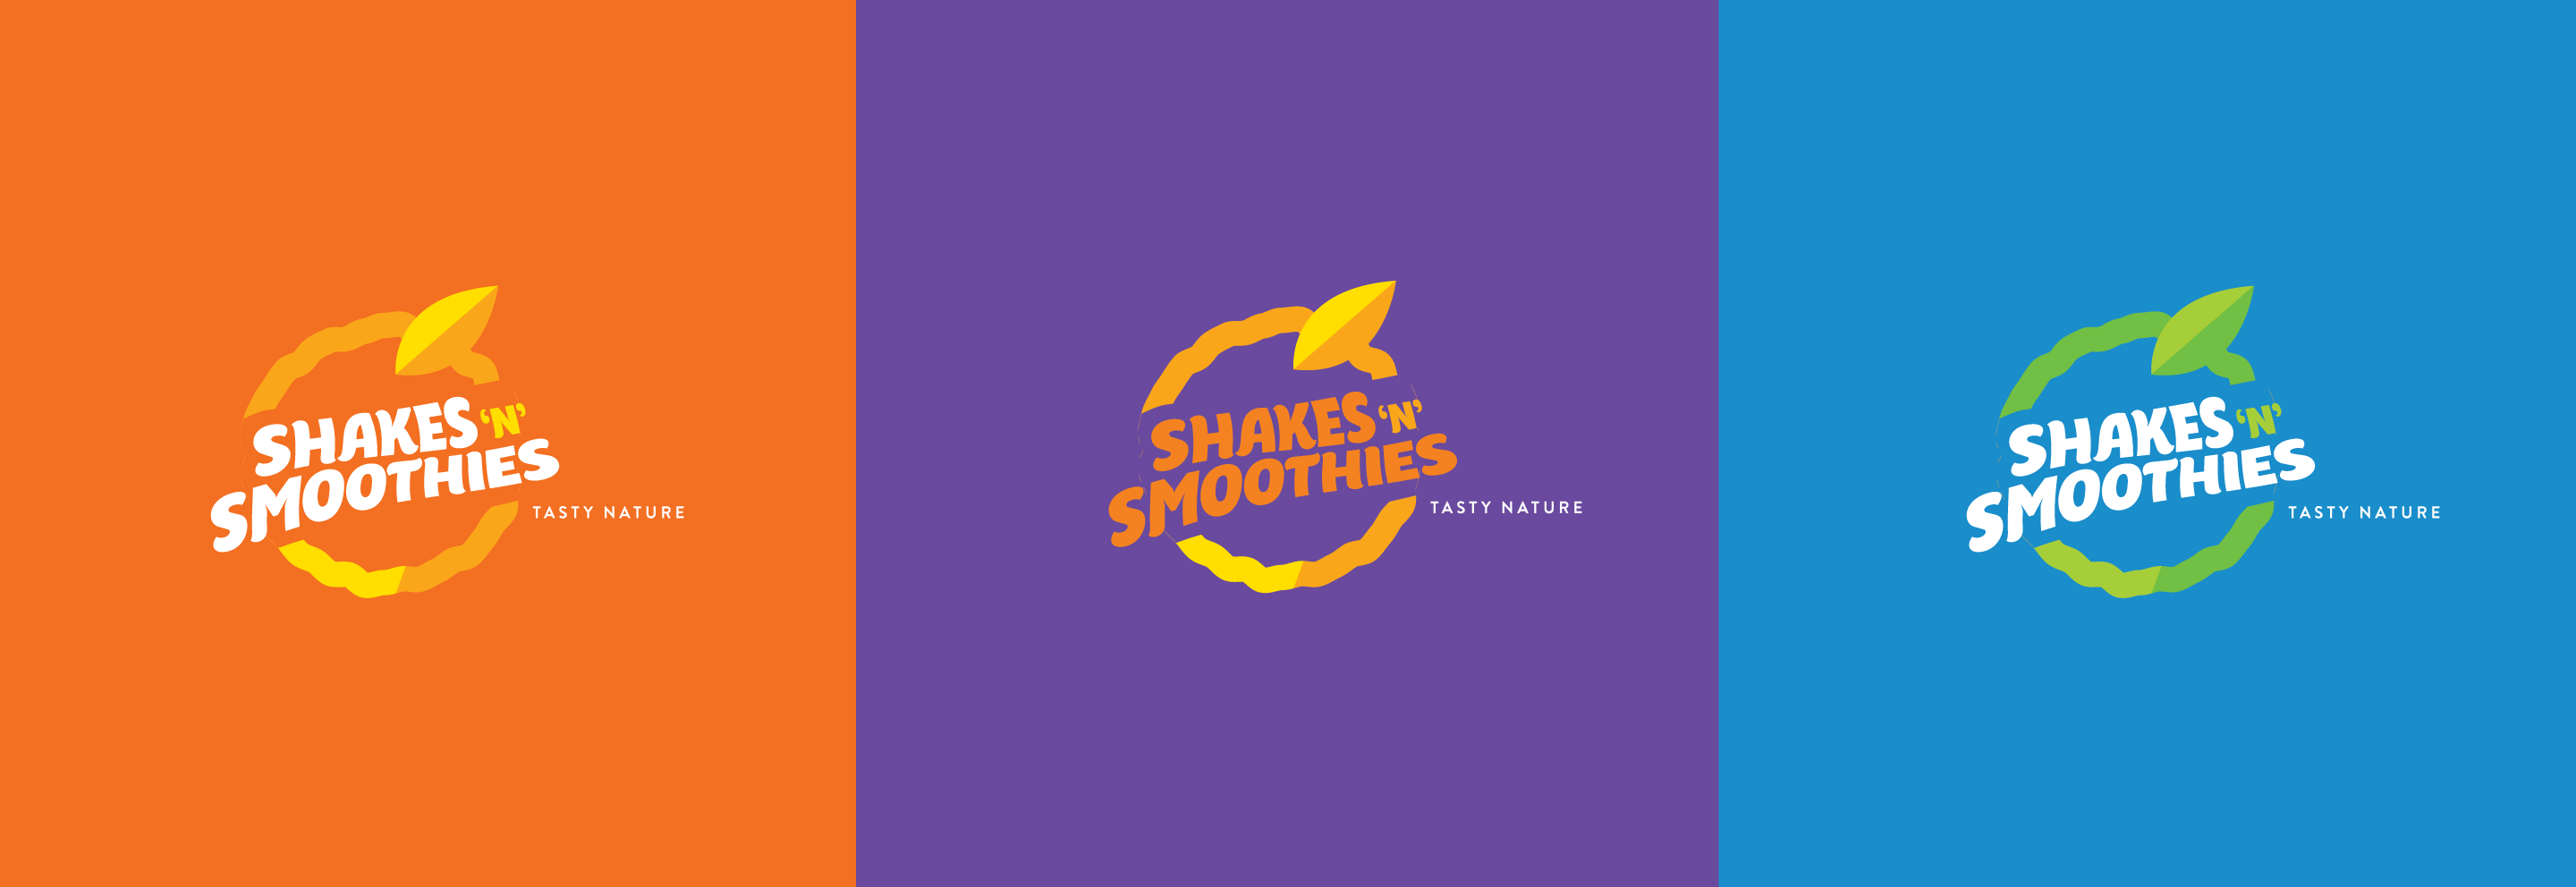 shakes-smoothies-3 1